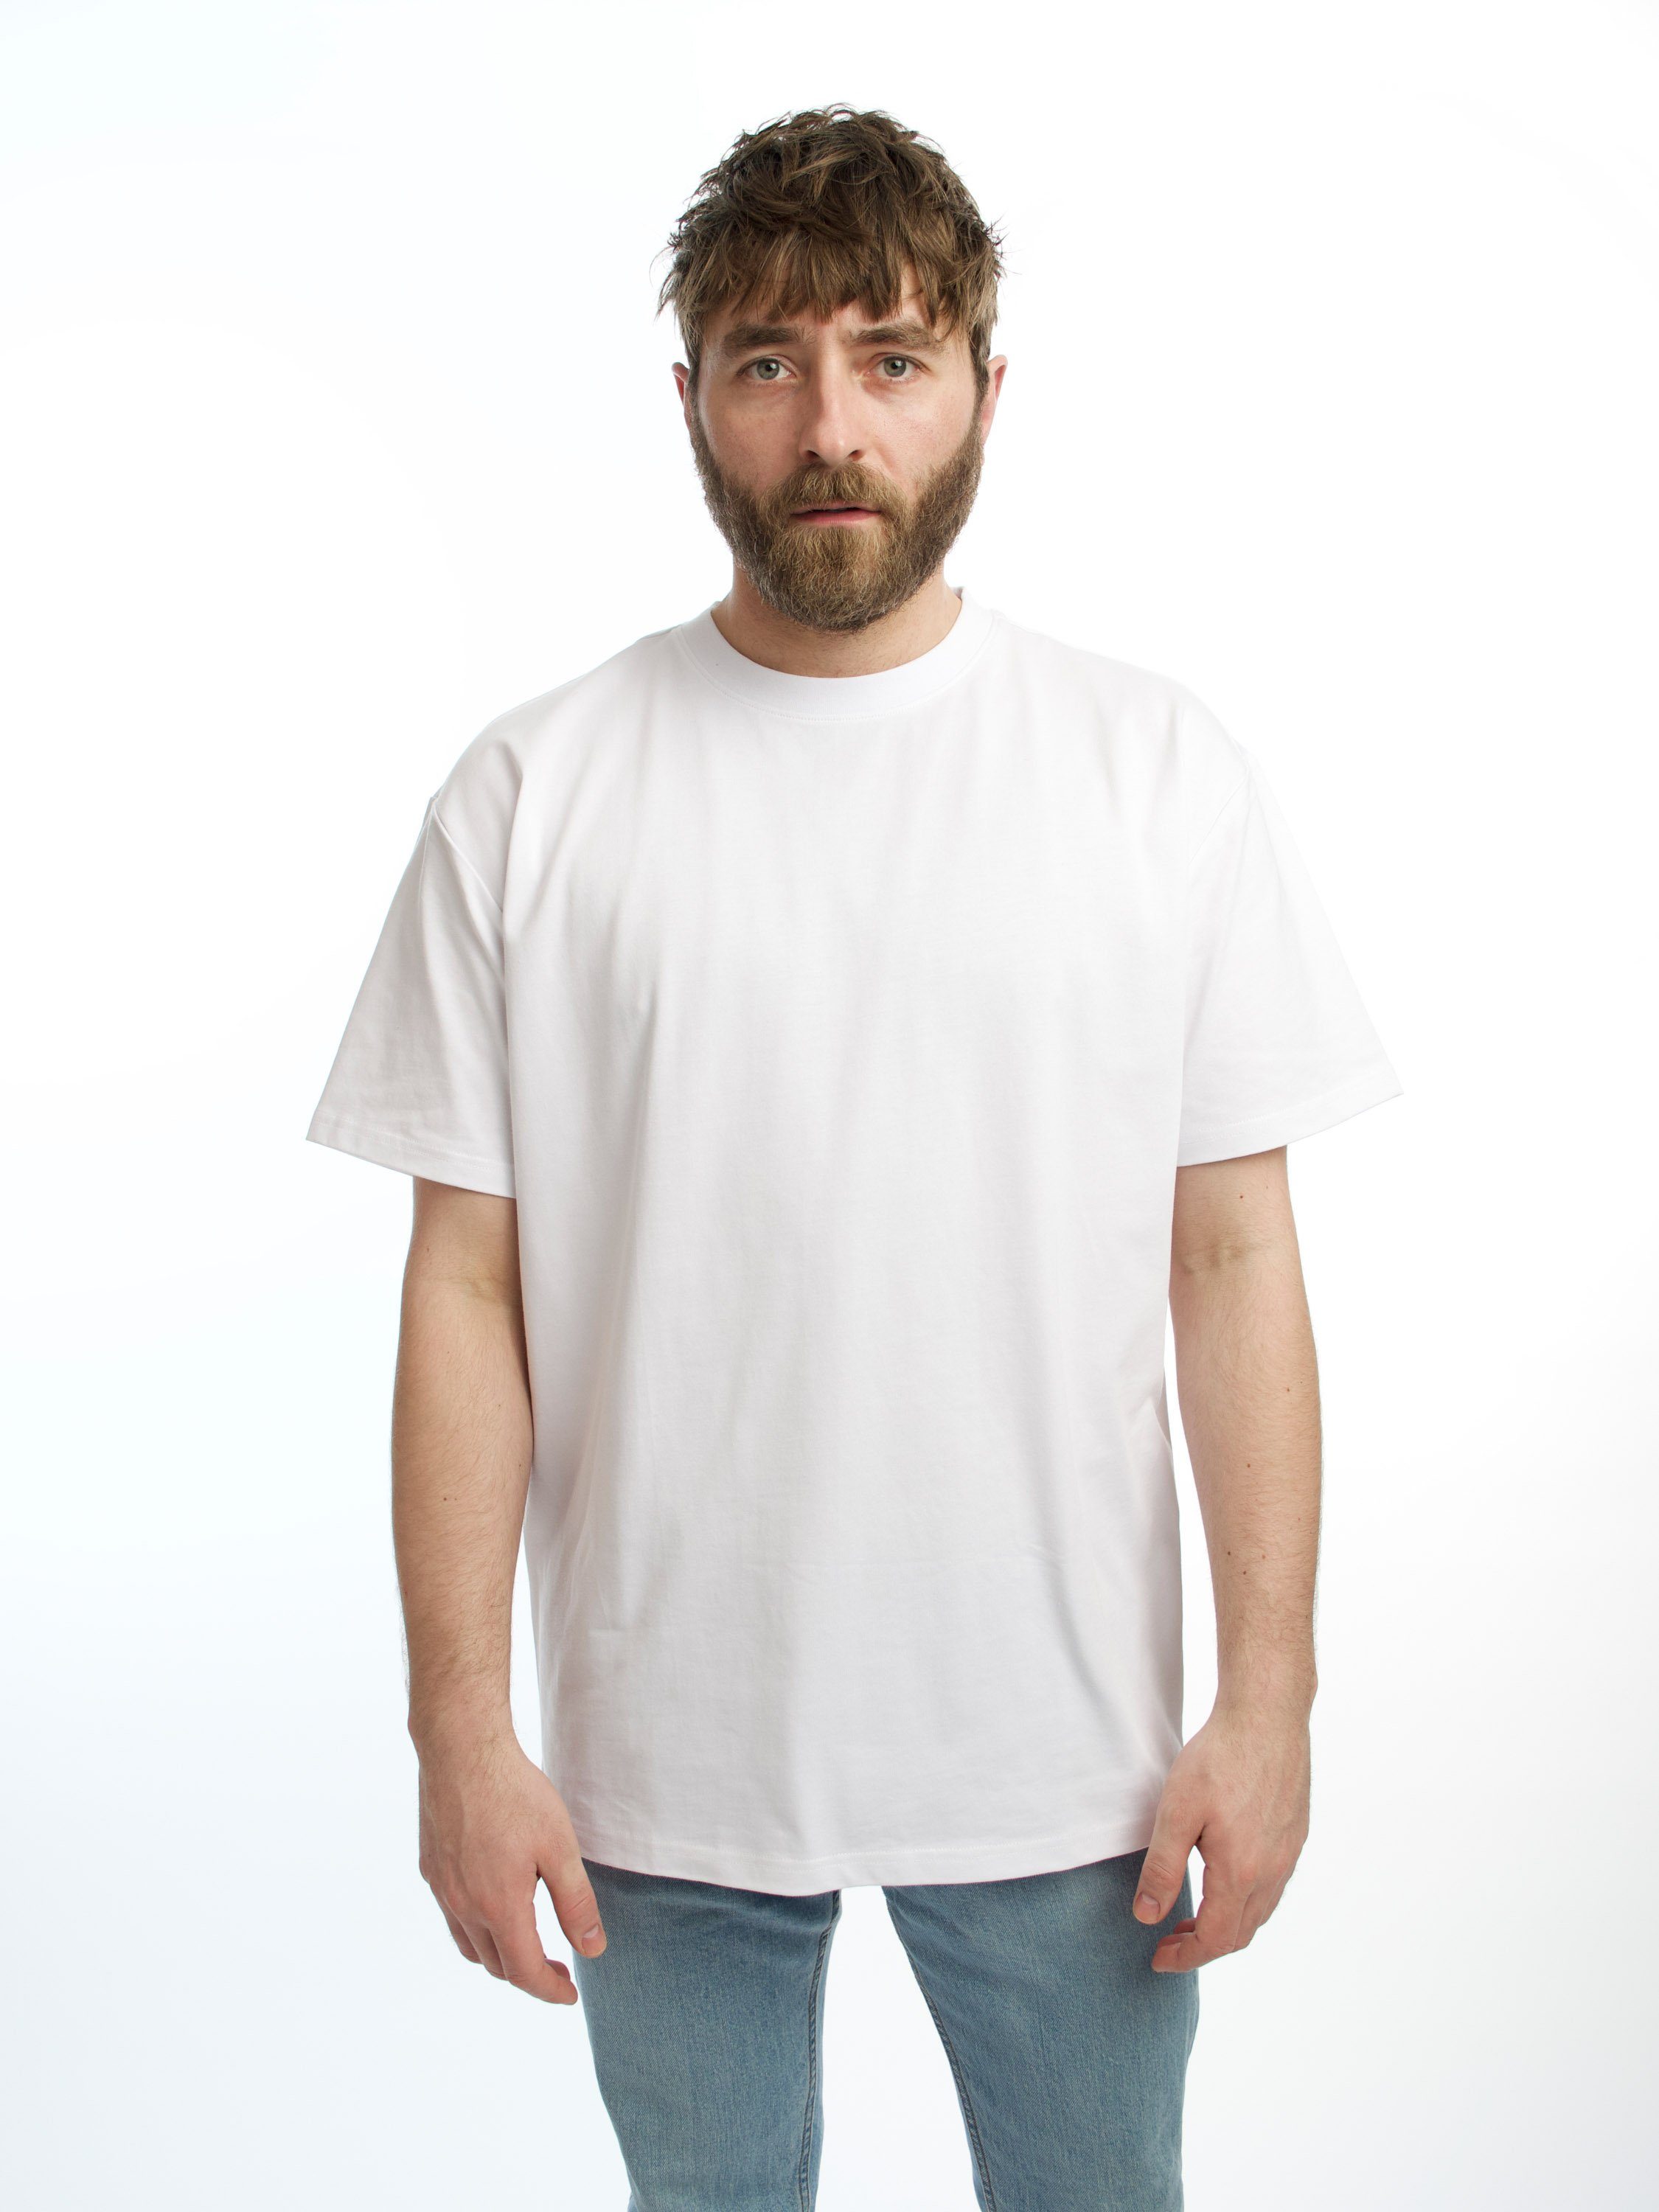 HONEST BASICS Rundhalsshirt OG Shirt aus OCS und GRS zertifizierter Bio-Baumwolle weiß